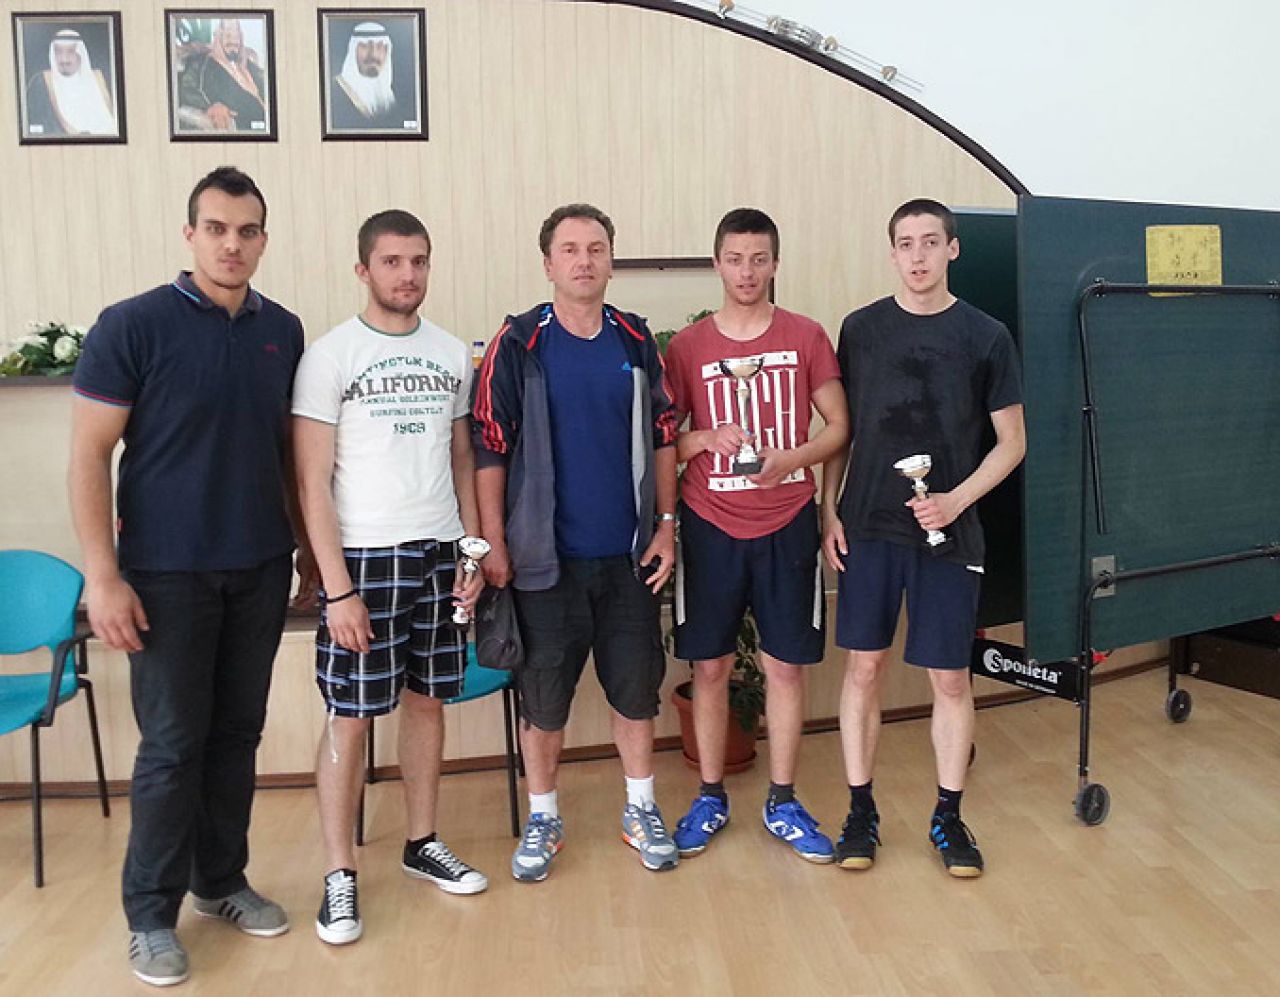 Stolni tenis kao sport prijateljstva i druženja u Mostaru